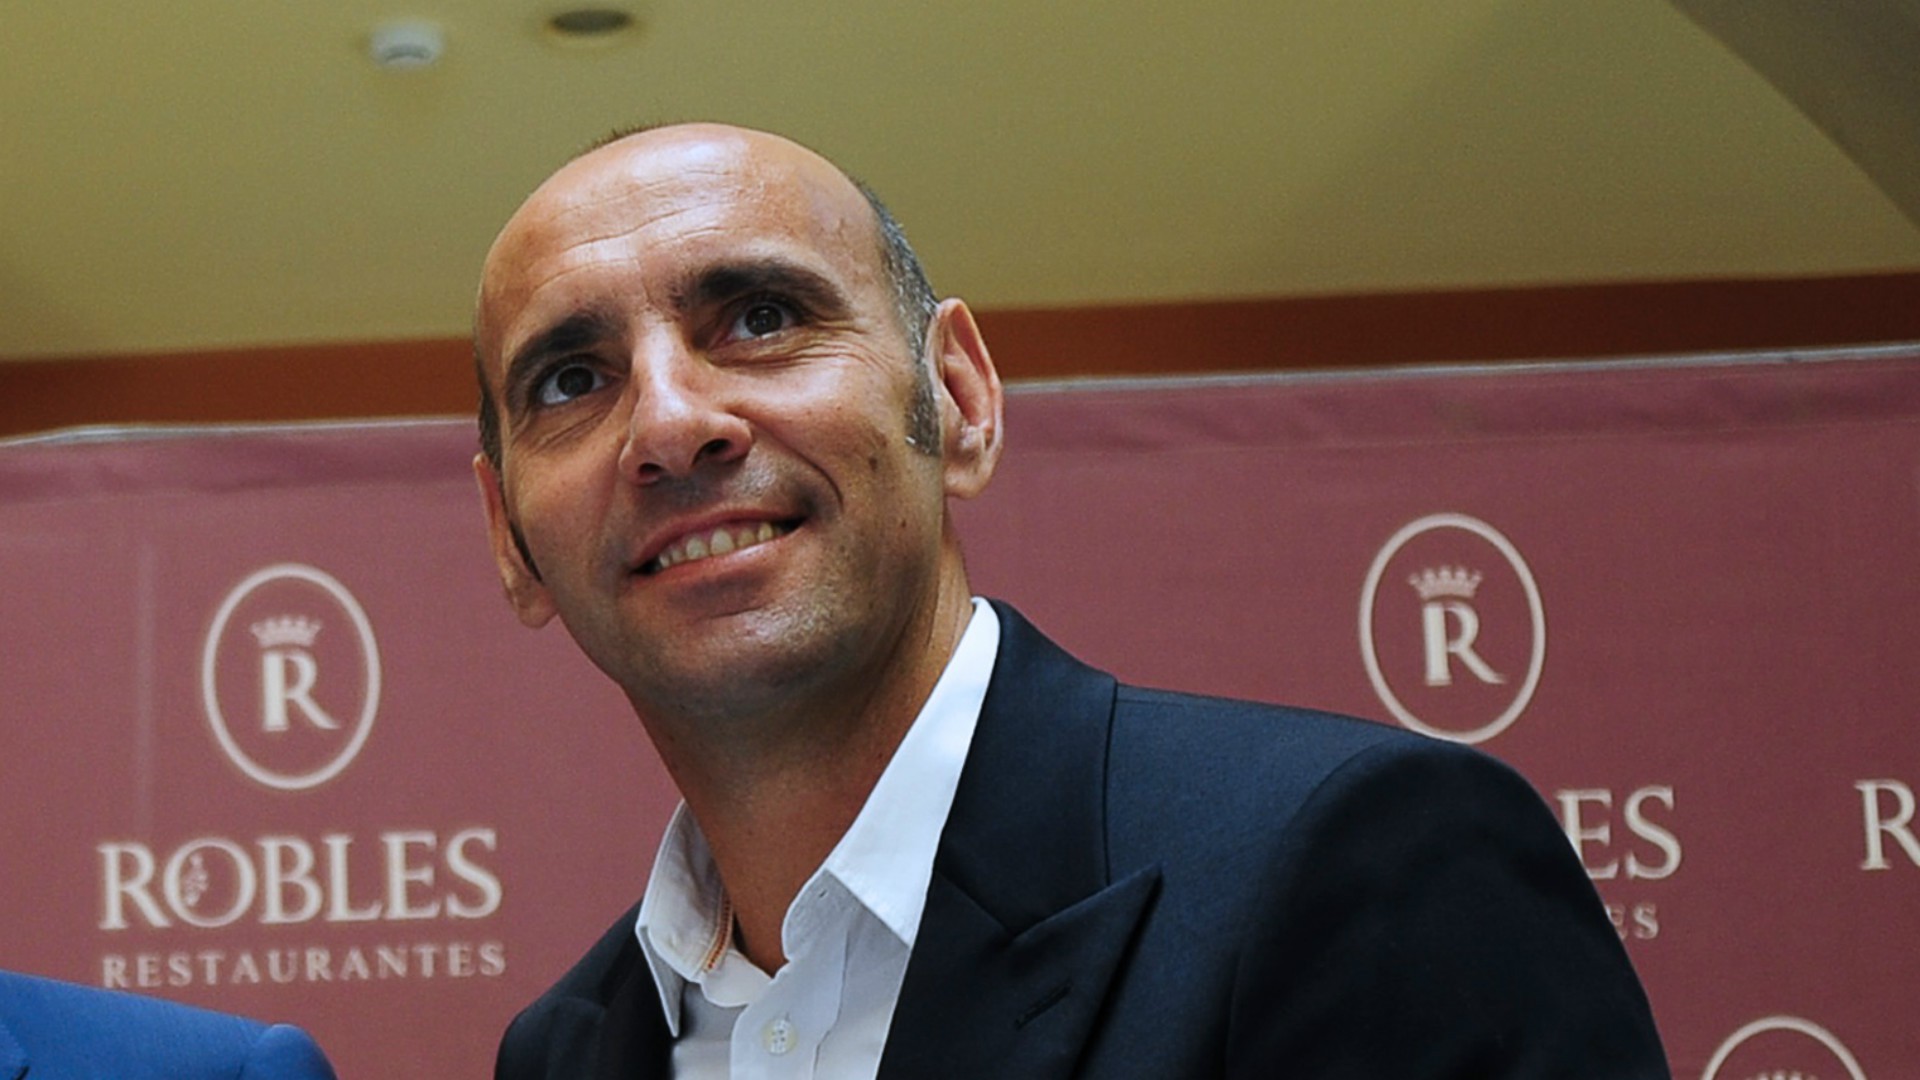 Monchi của Sevilla là mẫu giám đốc thể thao hiệu quả trong những năm gần đây